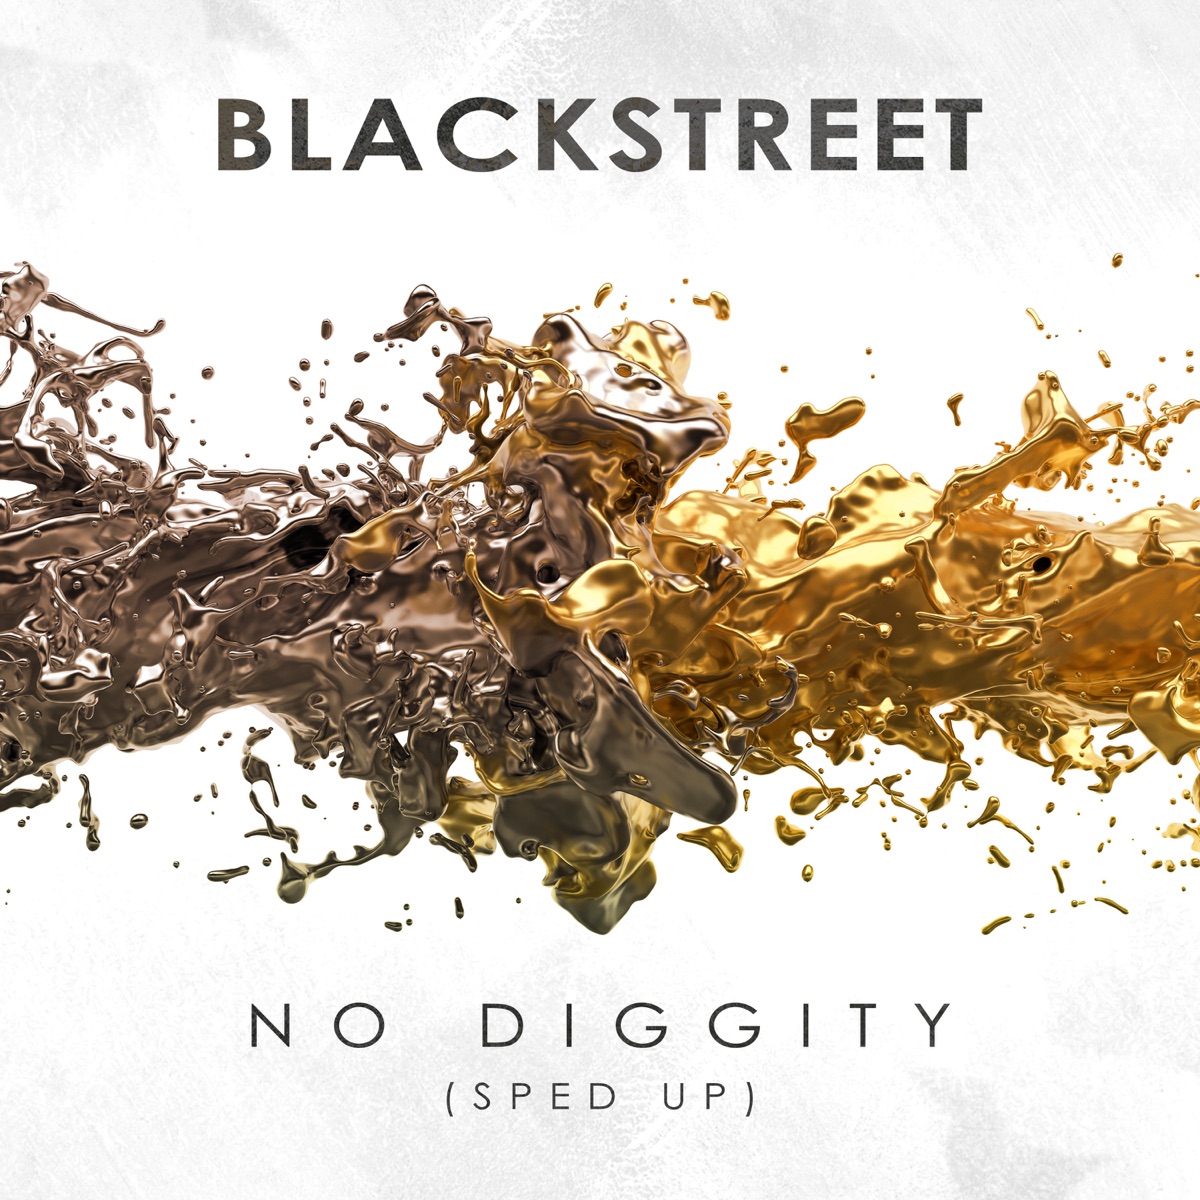 No Diggity (feat. Dr. Dre & Queen Pen) - Blackstreet